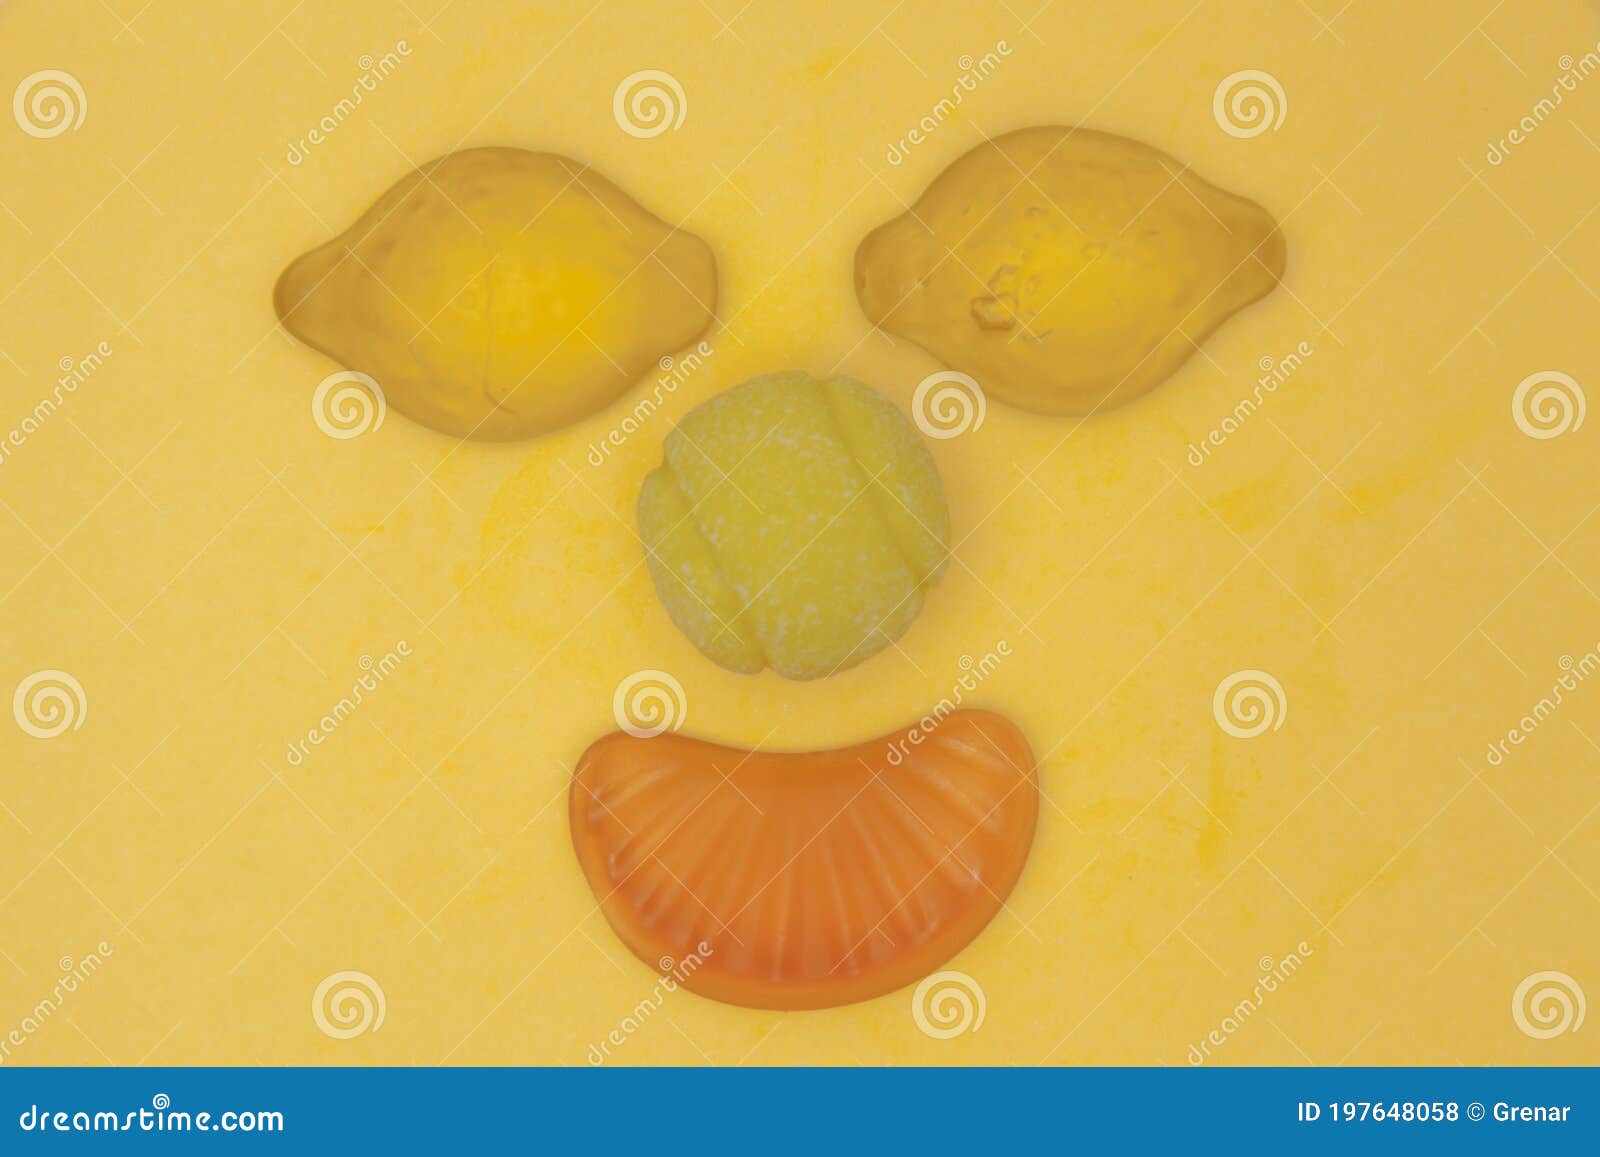 candy face yel lemon orange tennis